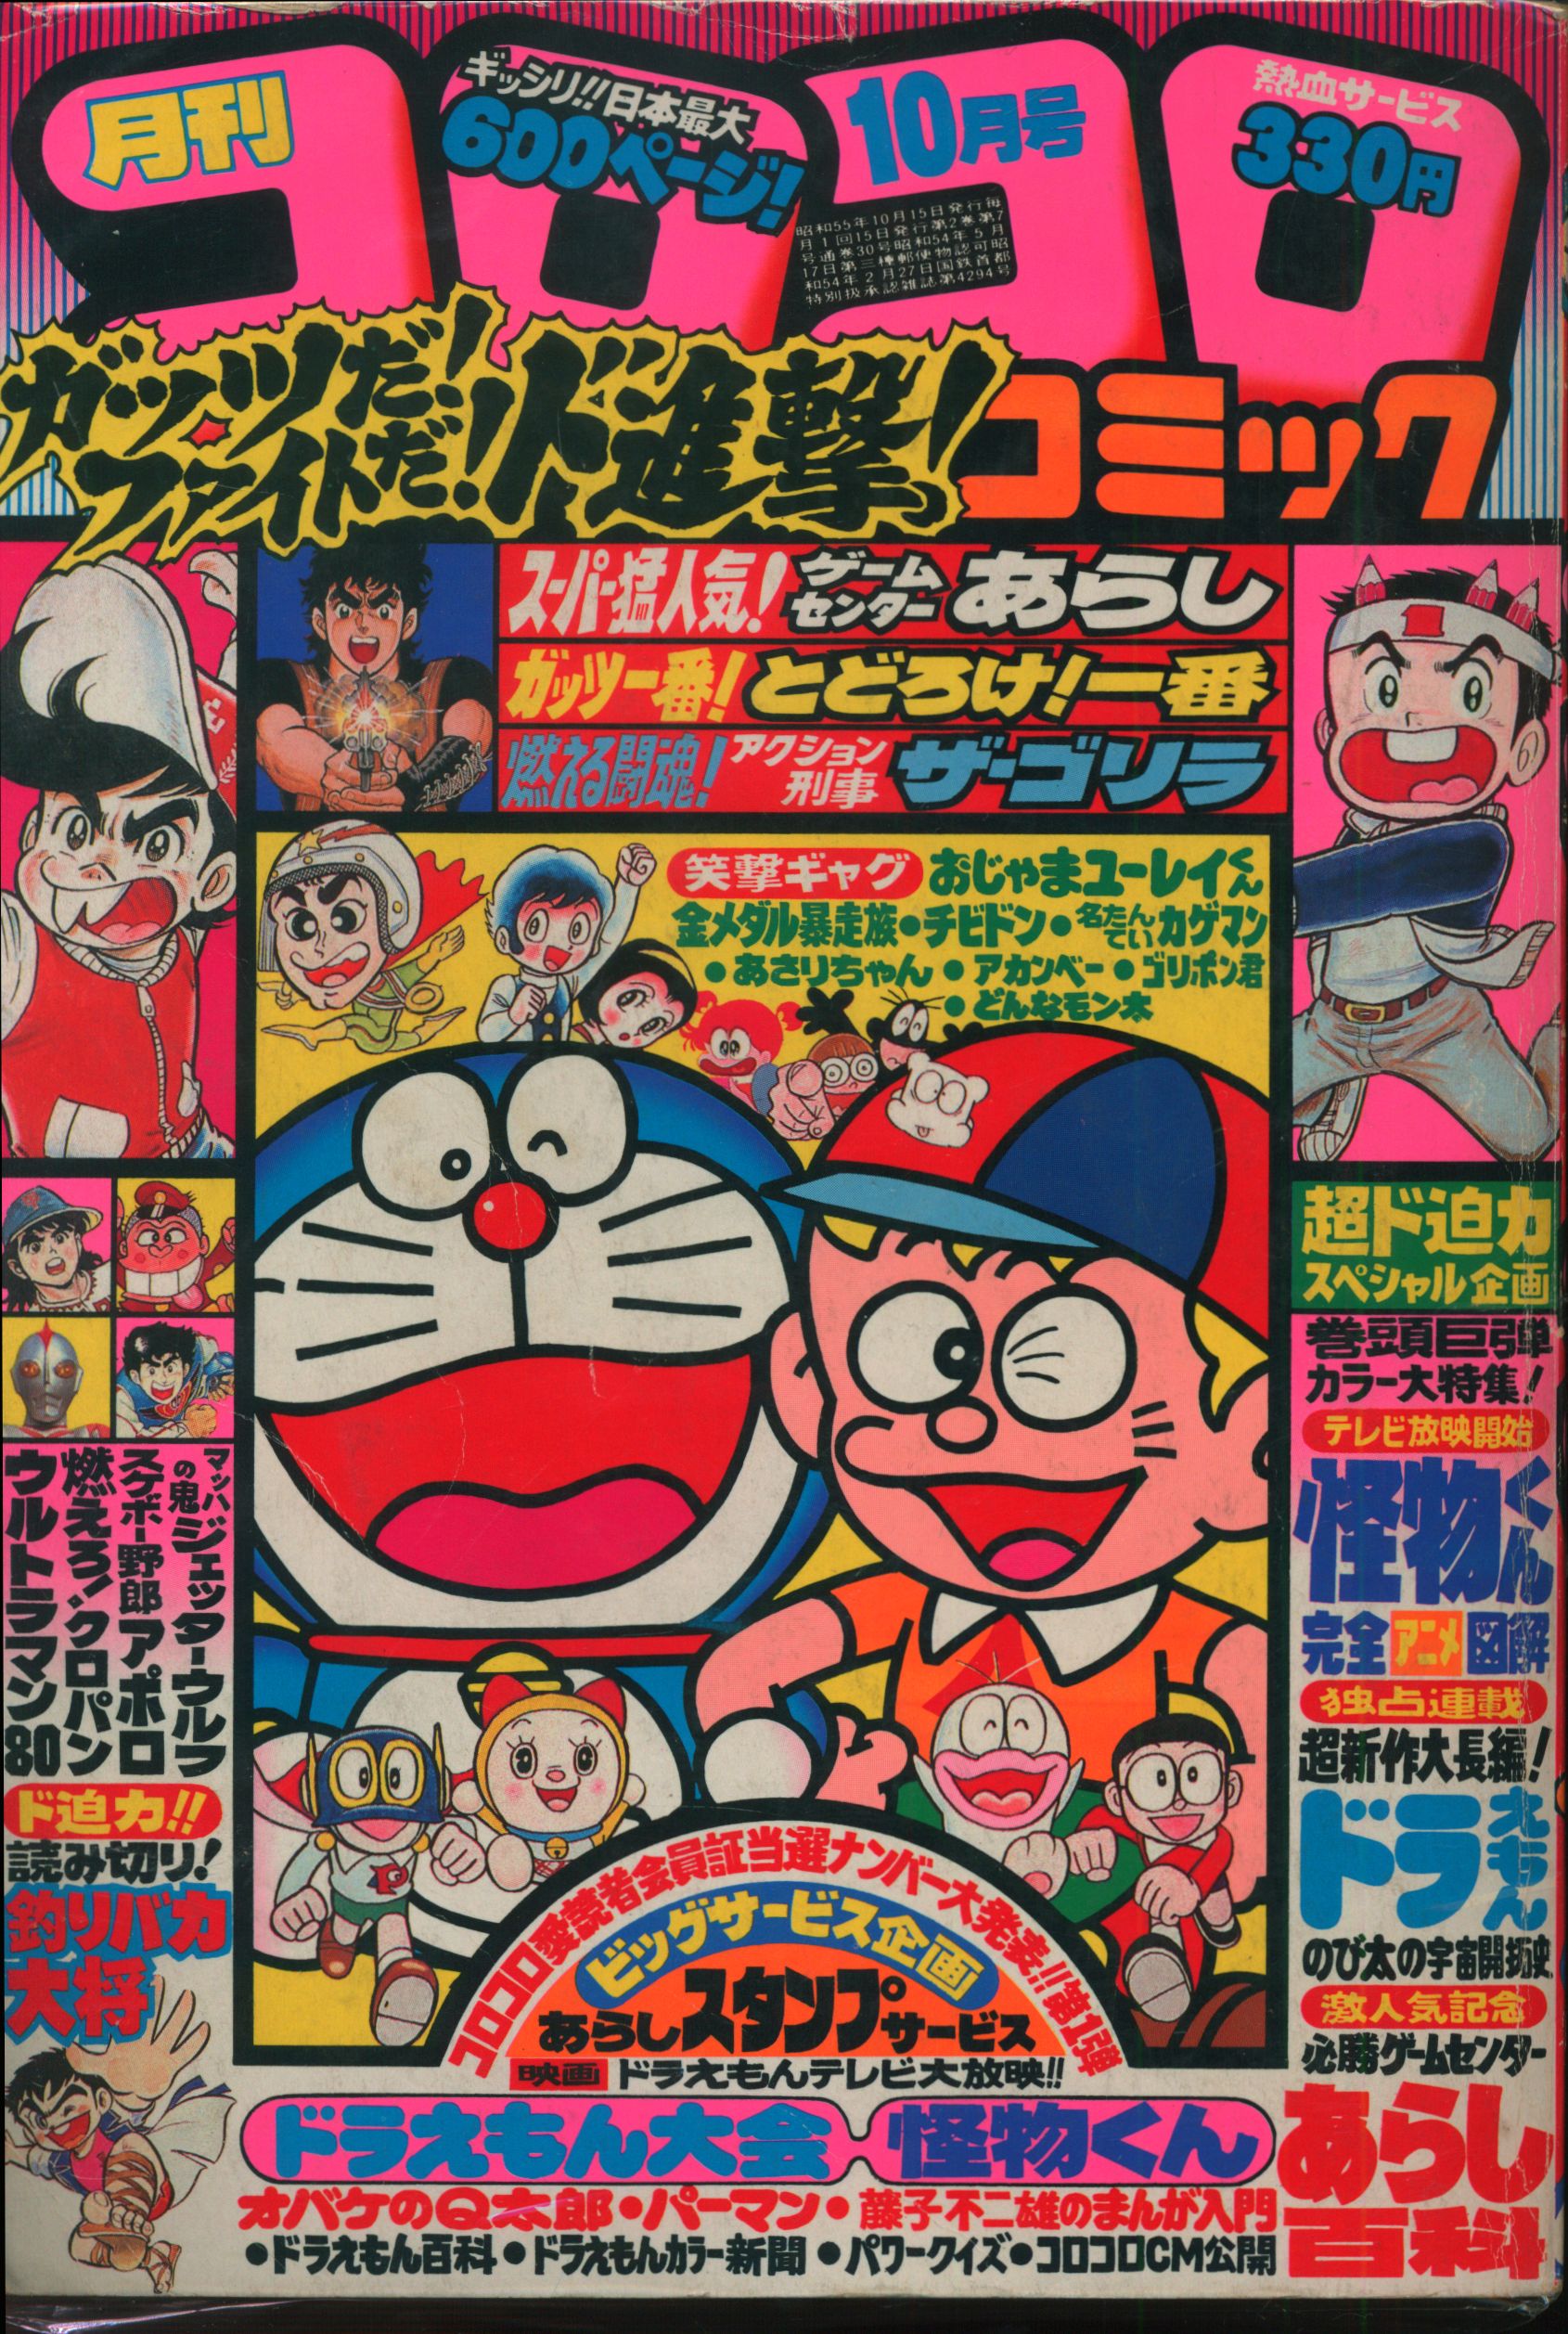 小学館 1980年 昭和55年 の漫画雑誌 コロコロコミック 1980年 昭和55年 10 月号 30 まんだらけ Mandarake